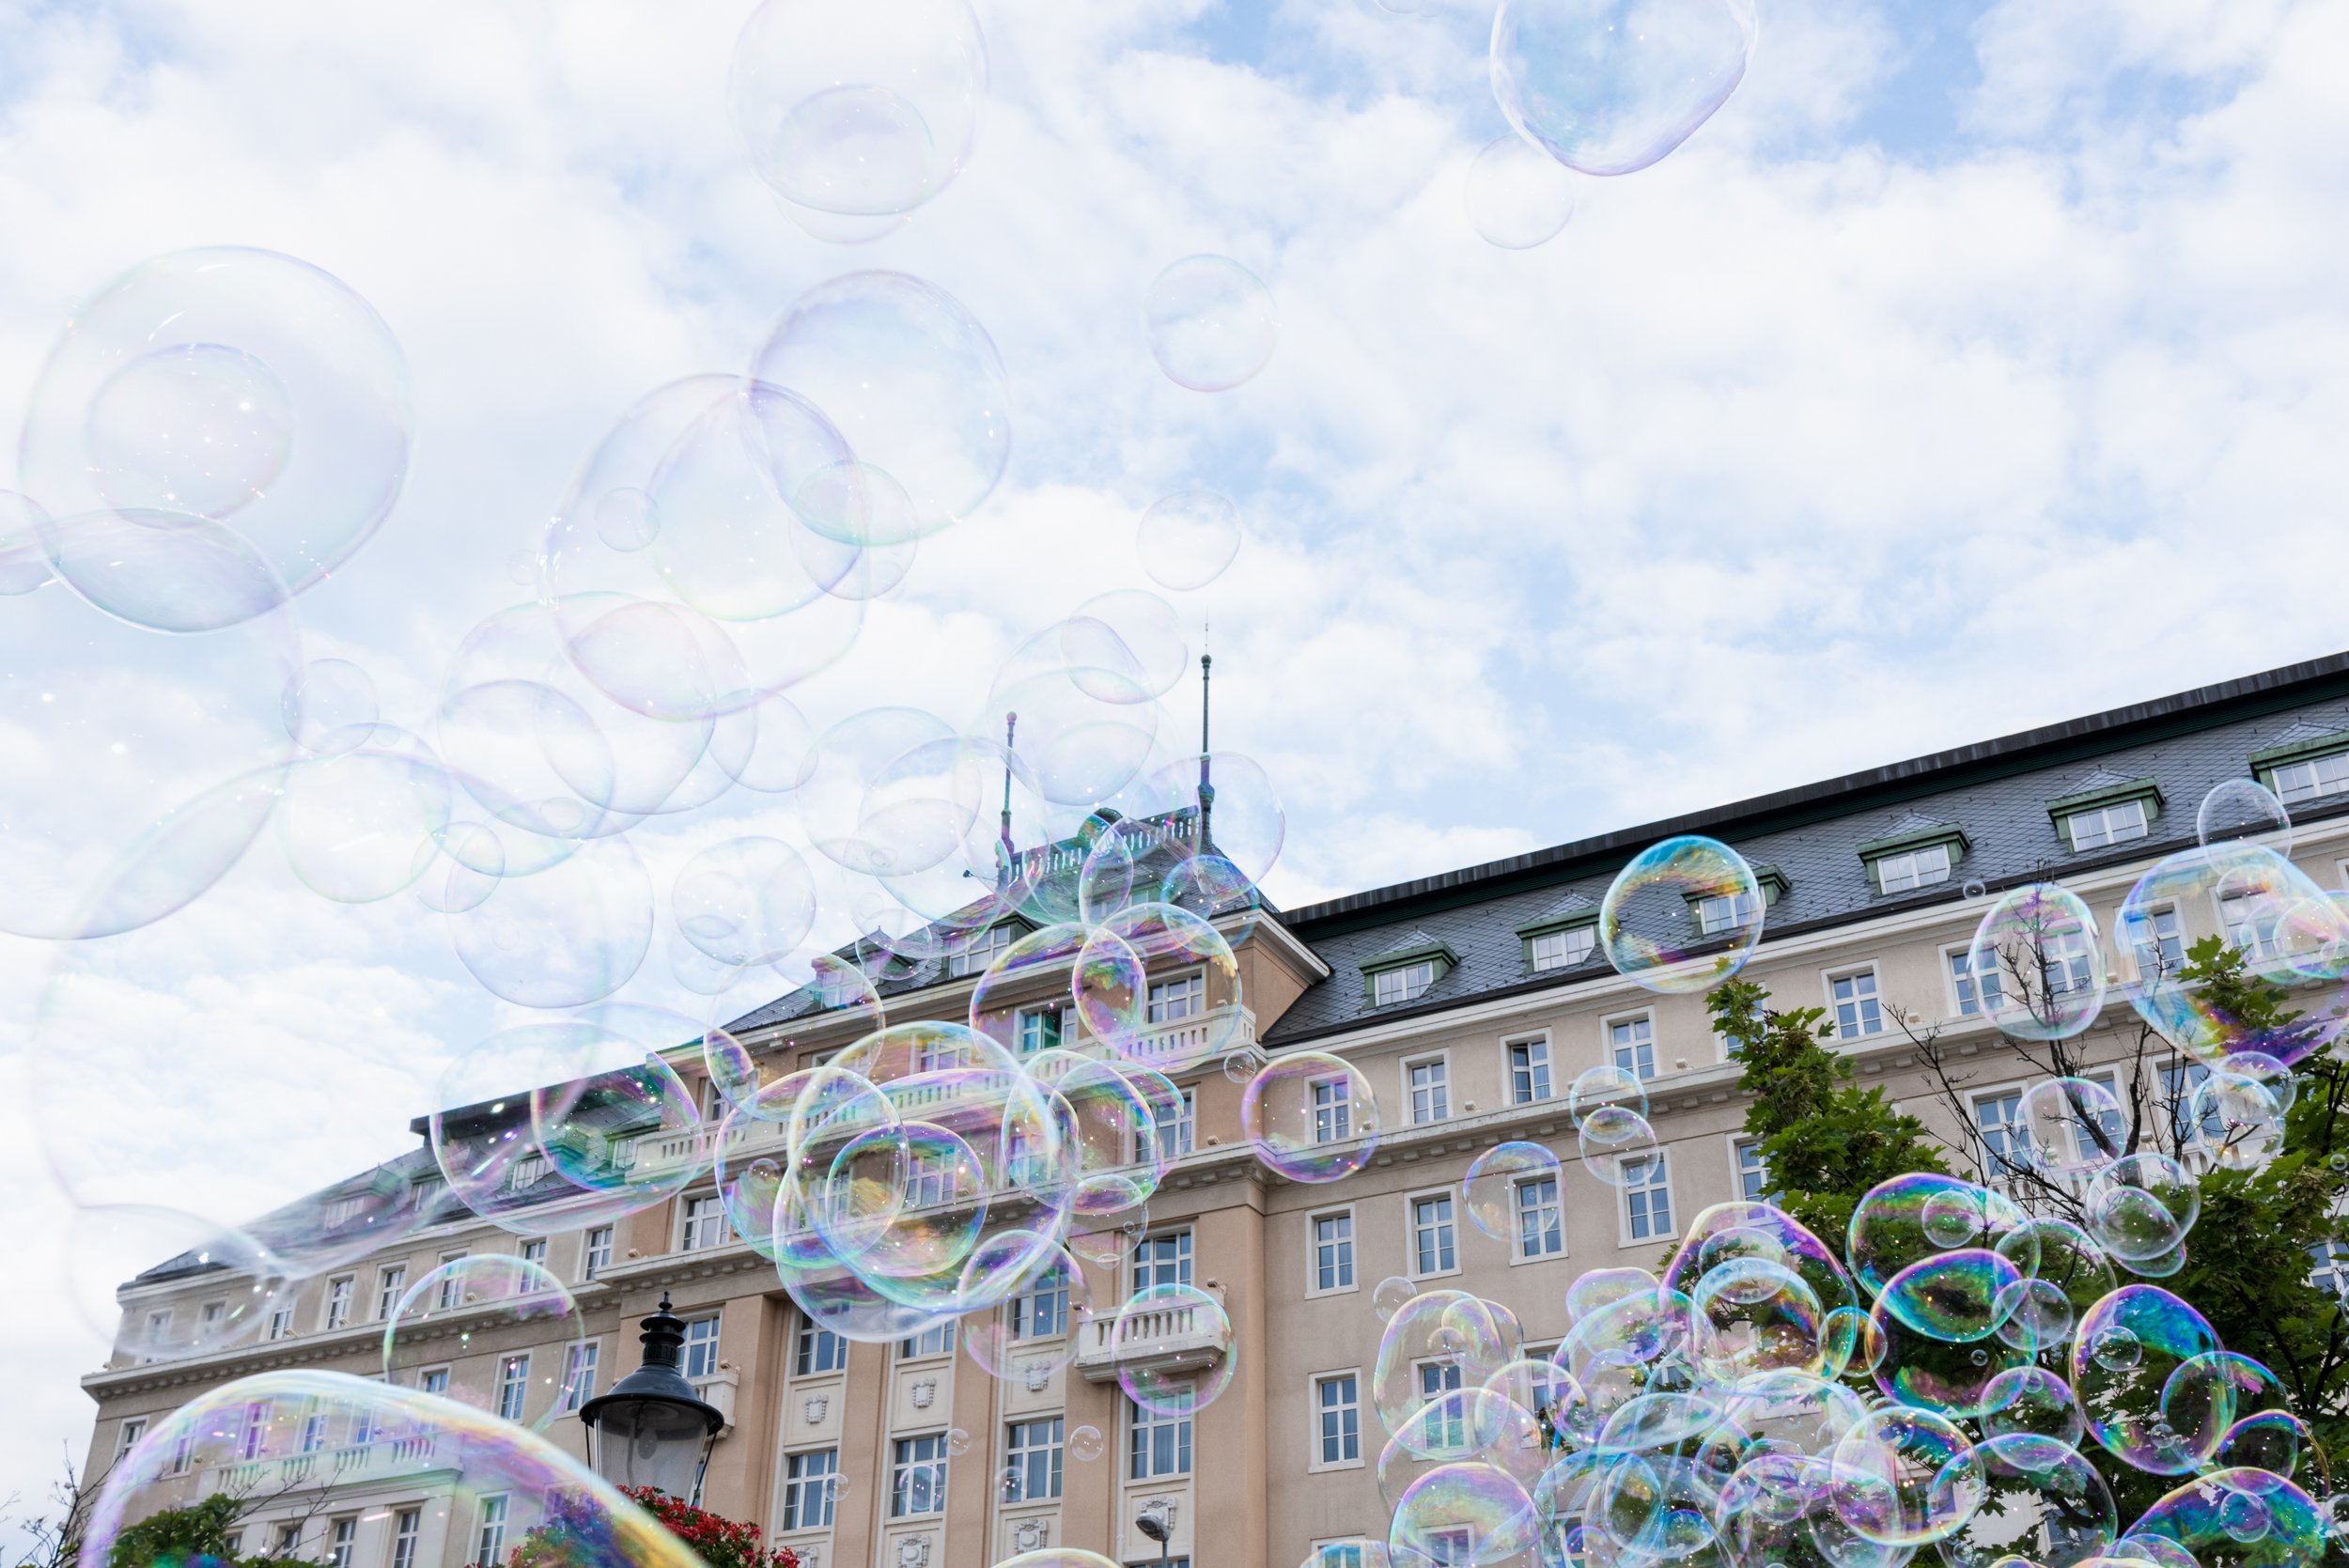 Bubbles in Bratislava